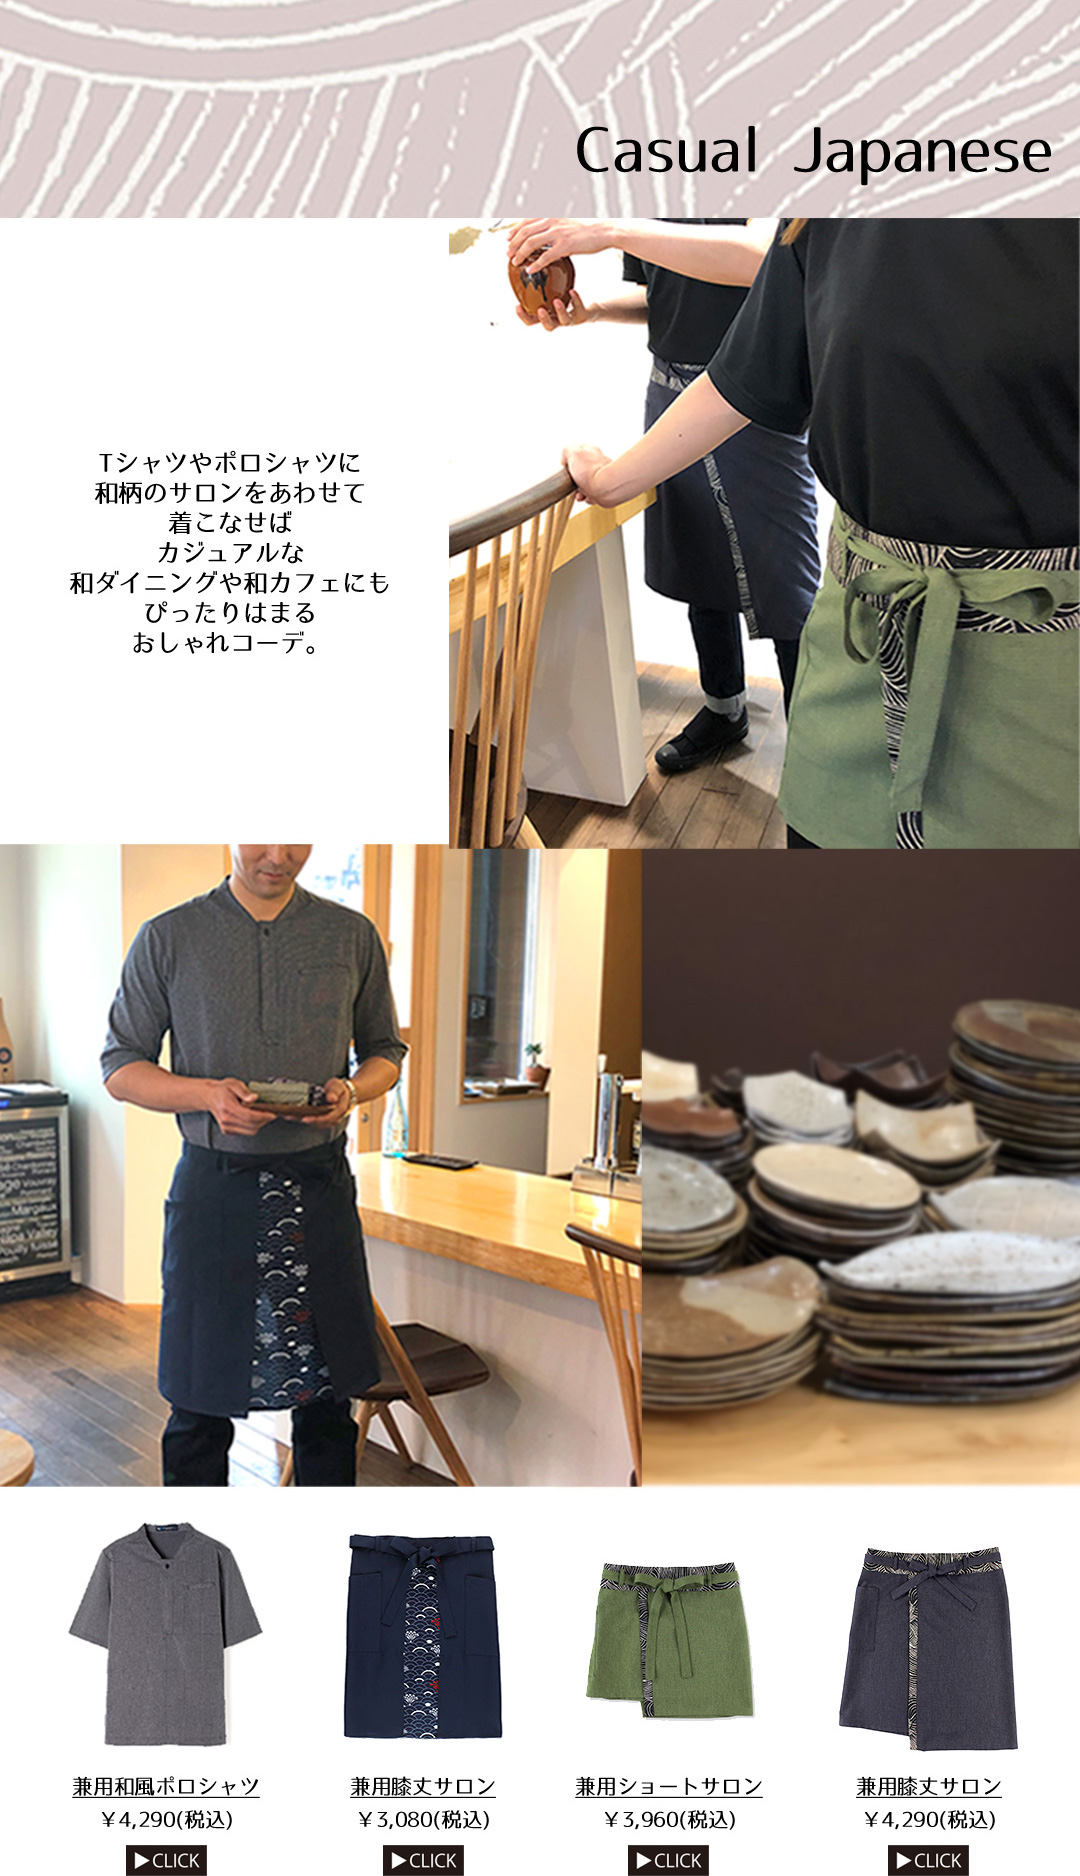 Casual Japanese Tシャツやポロシャツに和柄のサロンをあわせて着こなせばカジュアルな和ダイニングや和カフェにもぴったりはまるおしゃれコーデ。